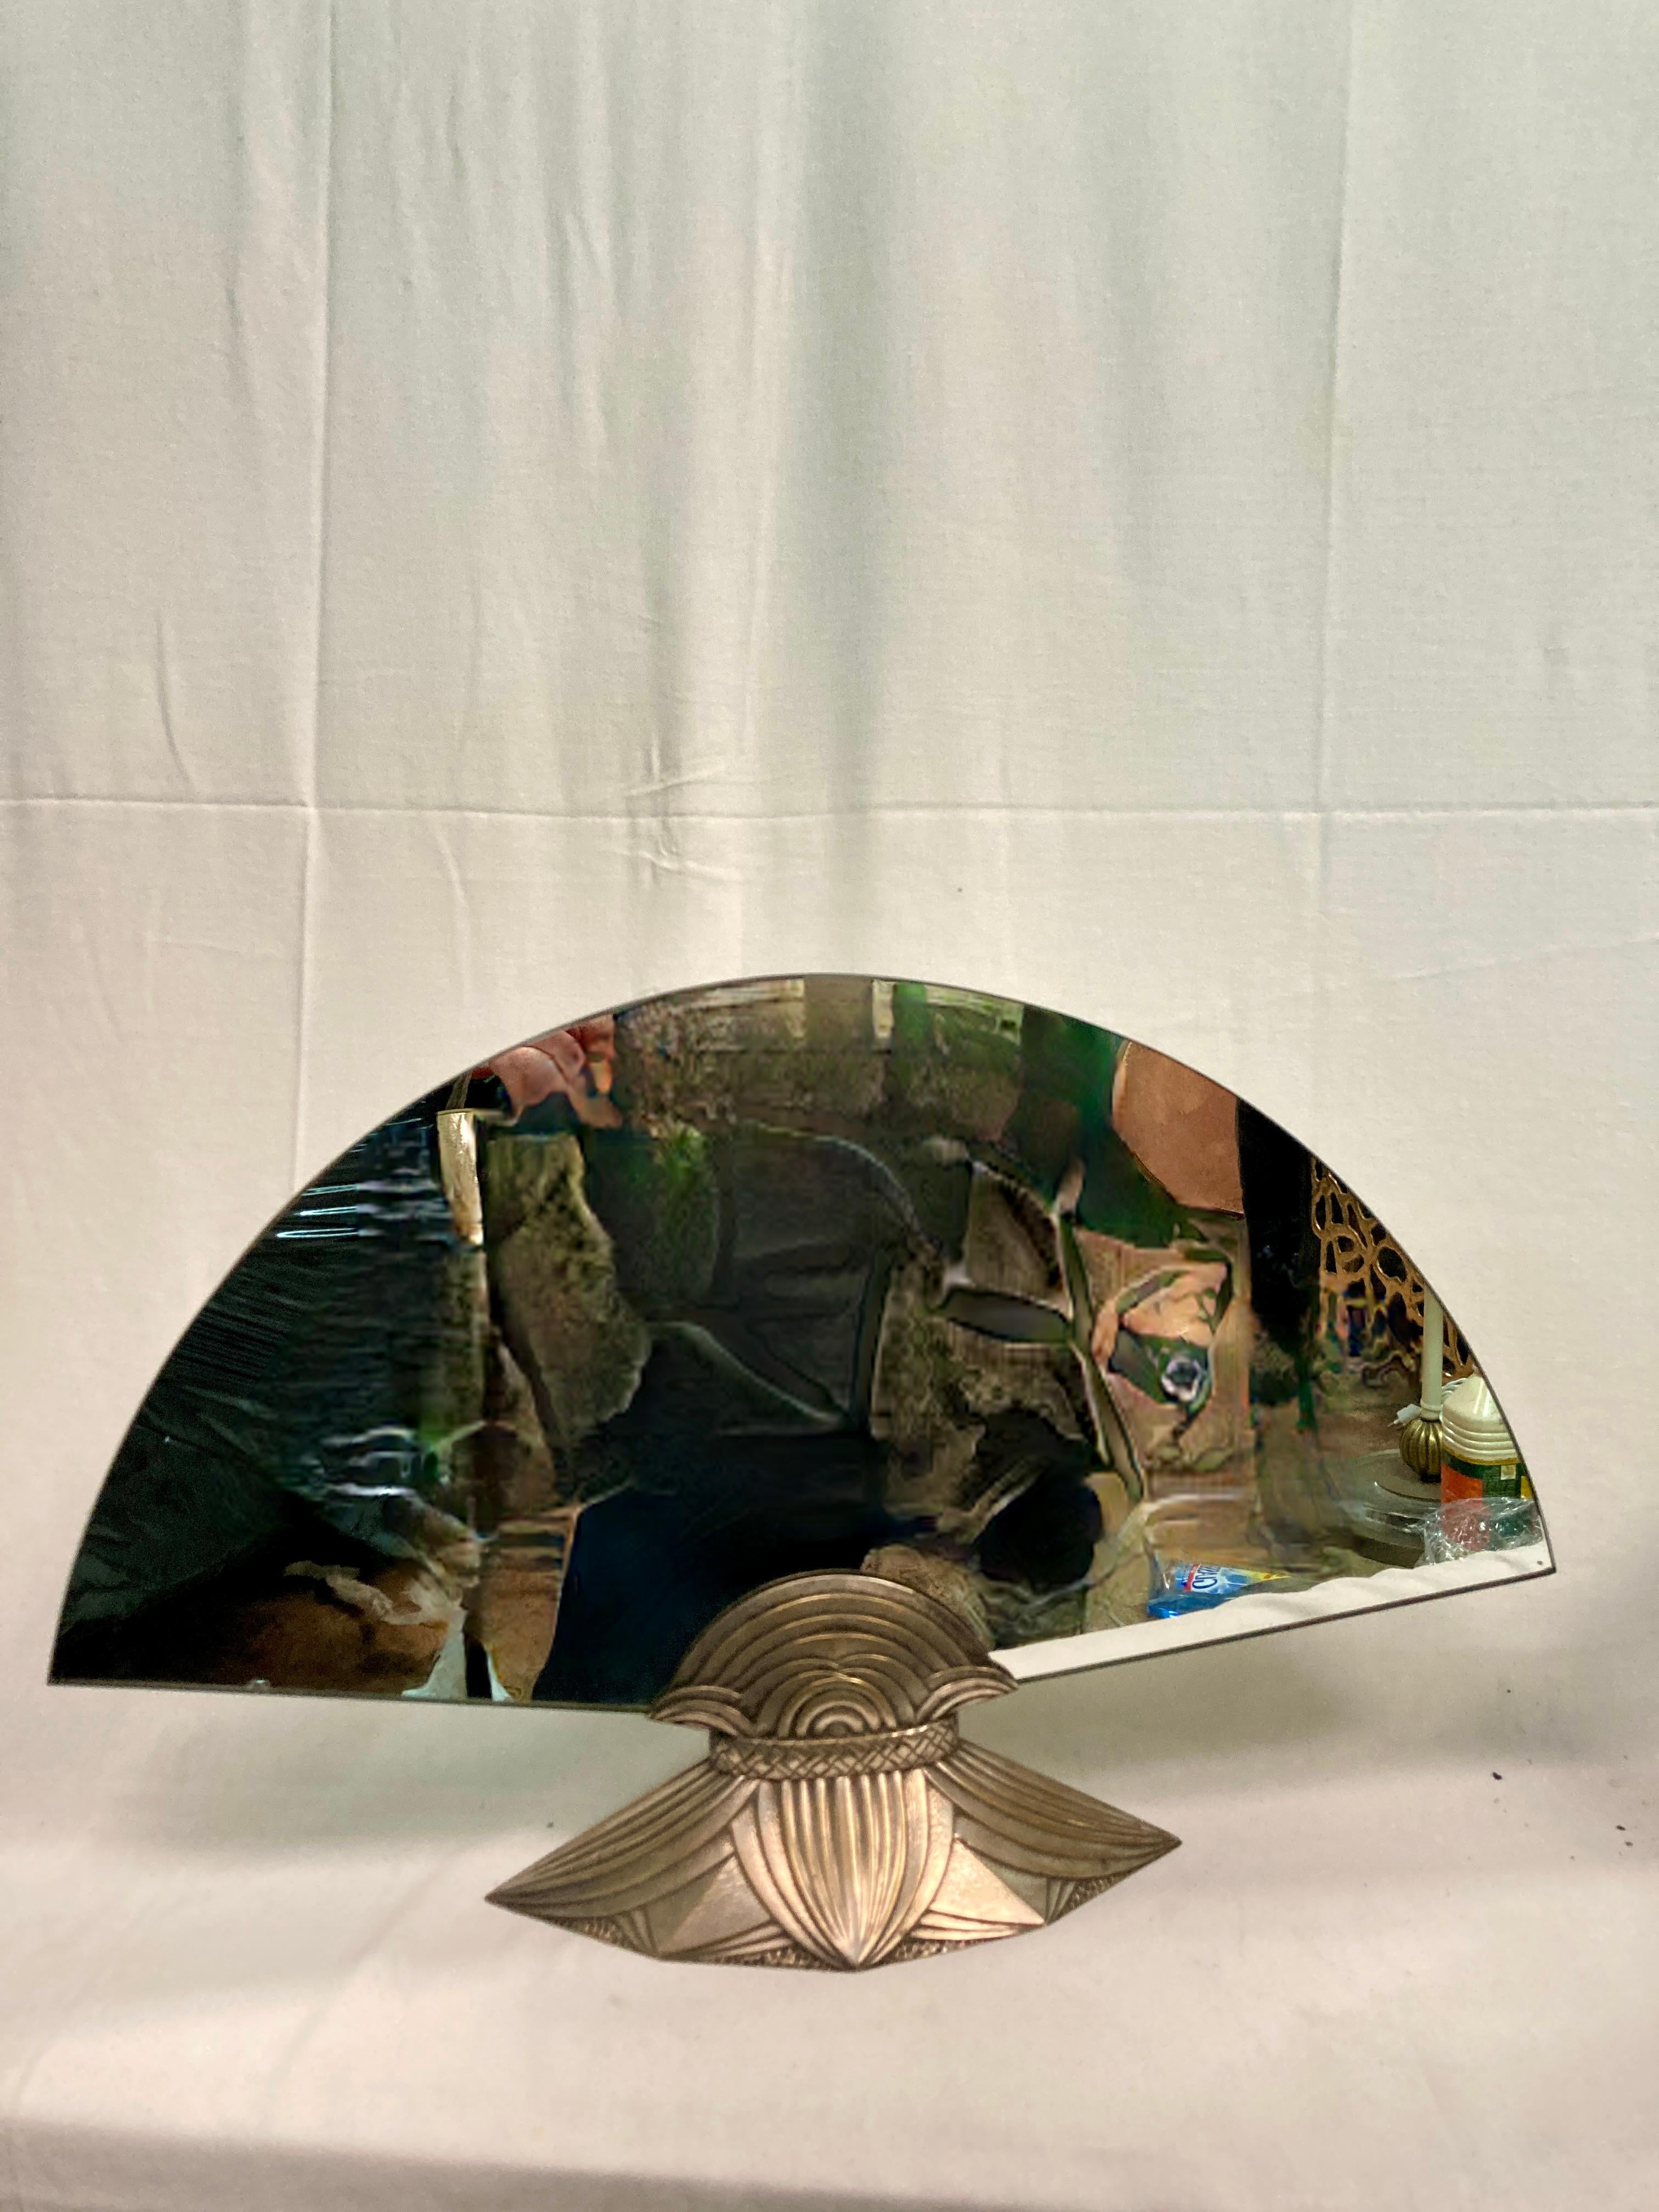 Seltener Tischspiegel aus Bronze signiert von Albert Cheuret
Ägyptische Inspiration mit stilisierten Lotosblättern
CIRCA 1925 
Dokumentiert und in Museen ausgestellt 
Doppelseitiger Spiegel
Ersetzte Spiegel